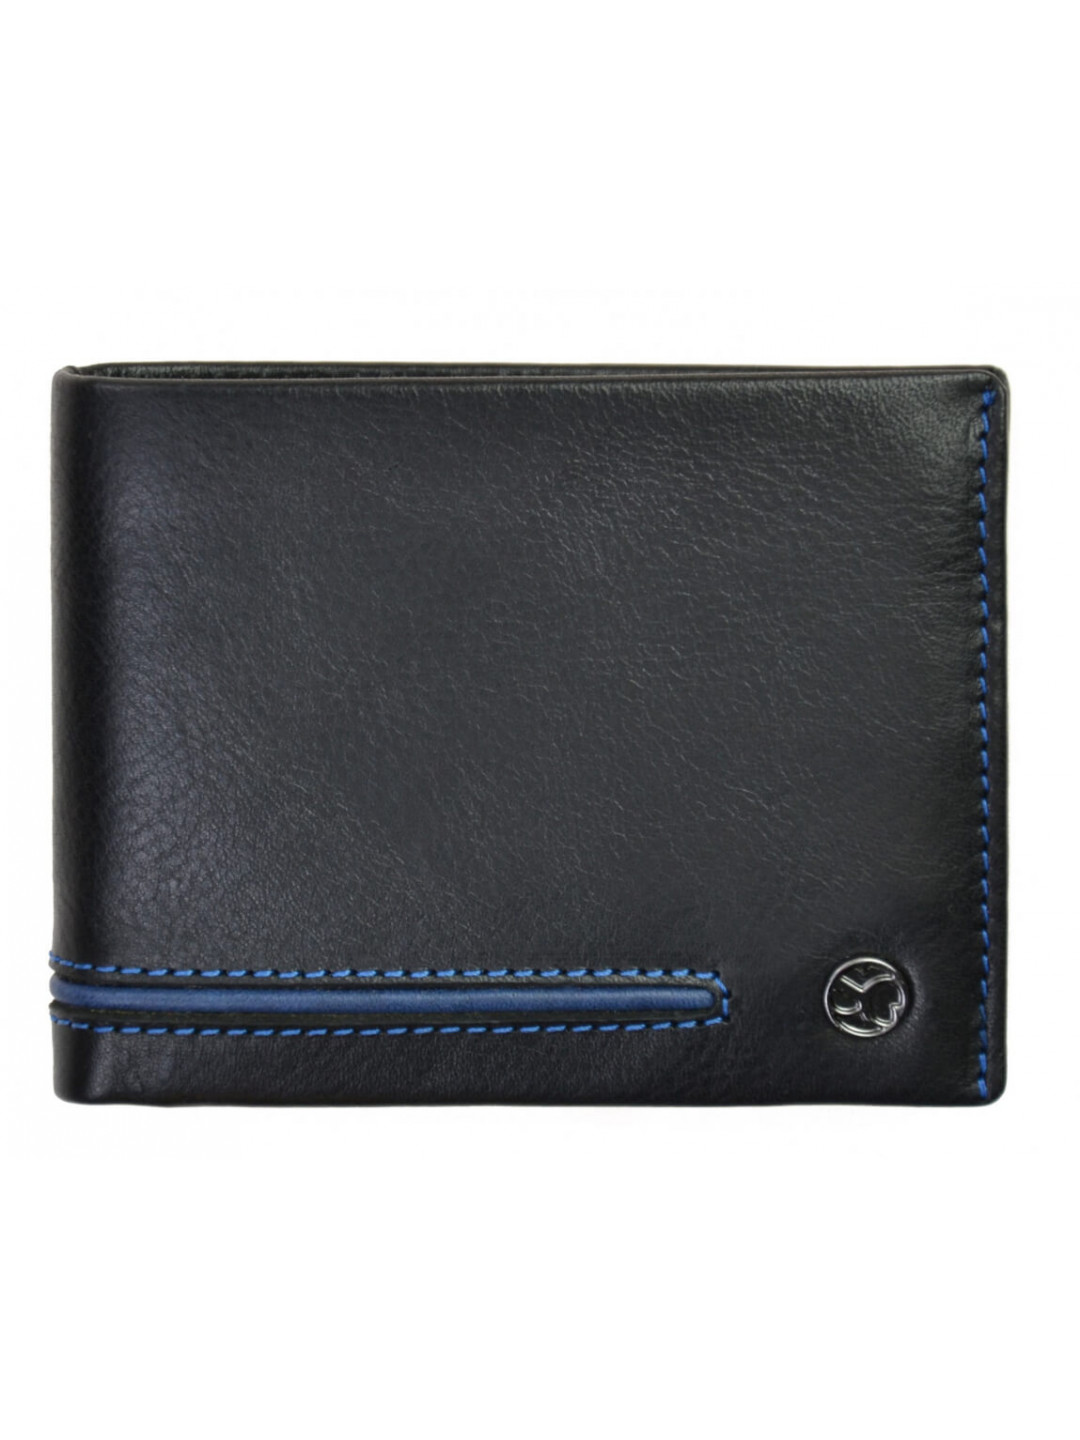 SEGALI Pánská kožená peněženka 753 115 026 black blue